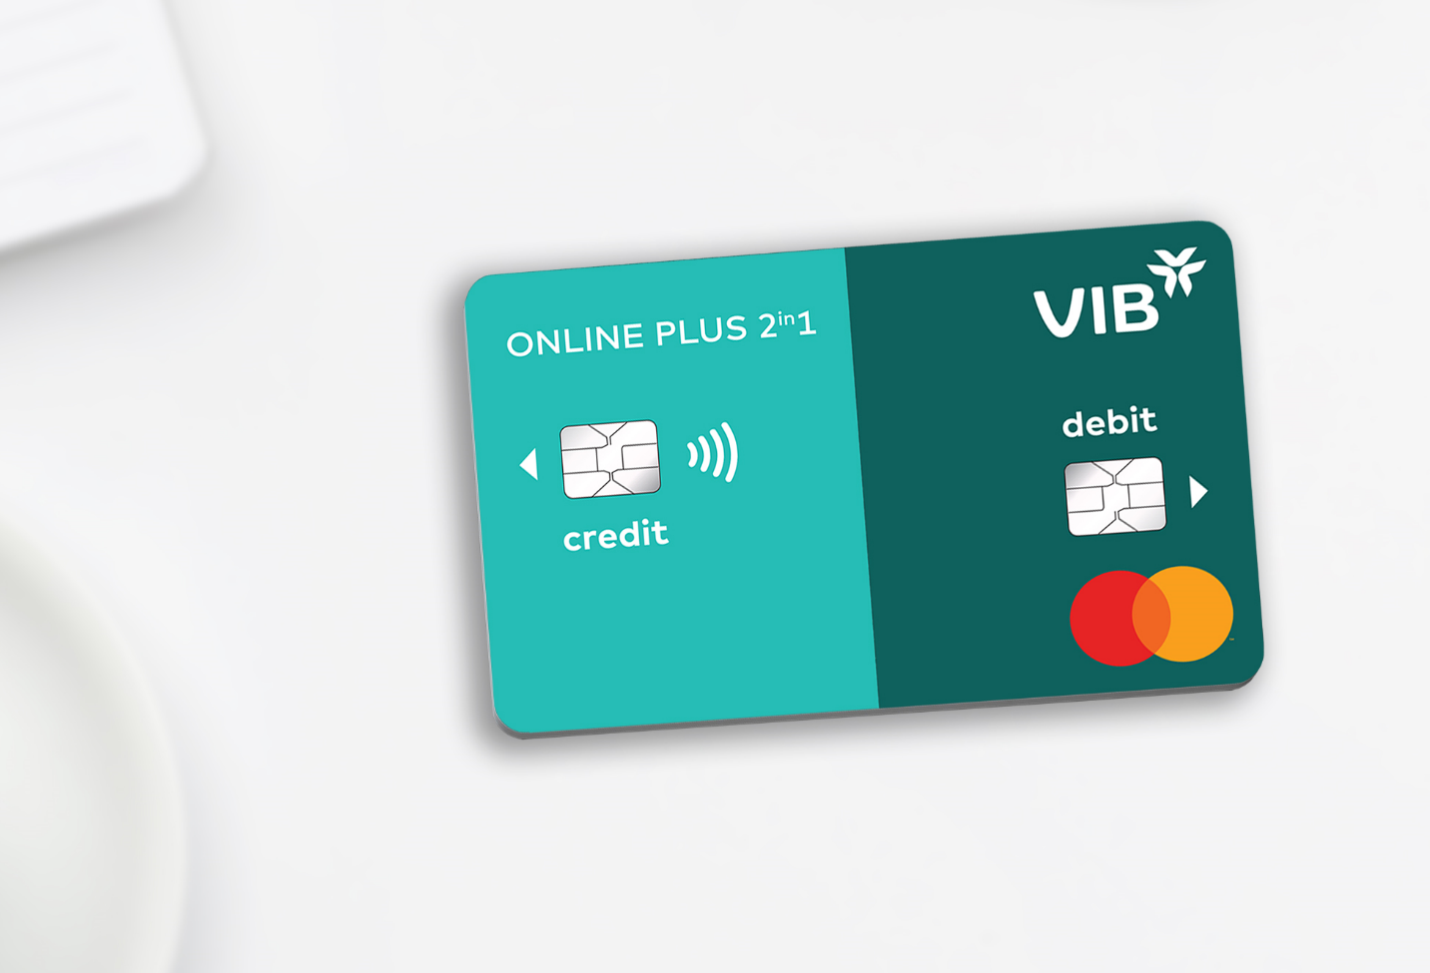 Thẻ VIB Online Plus 2in1 là dòng thẻ đầu tiên tại Đông Nam Á tích hợp thẻ tín dụng và thẻ thanh toán